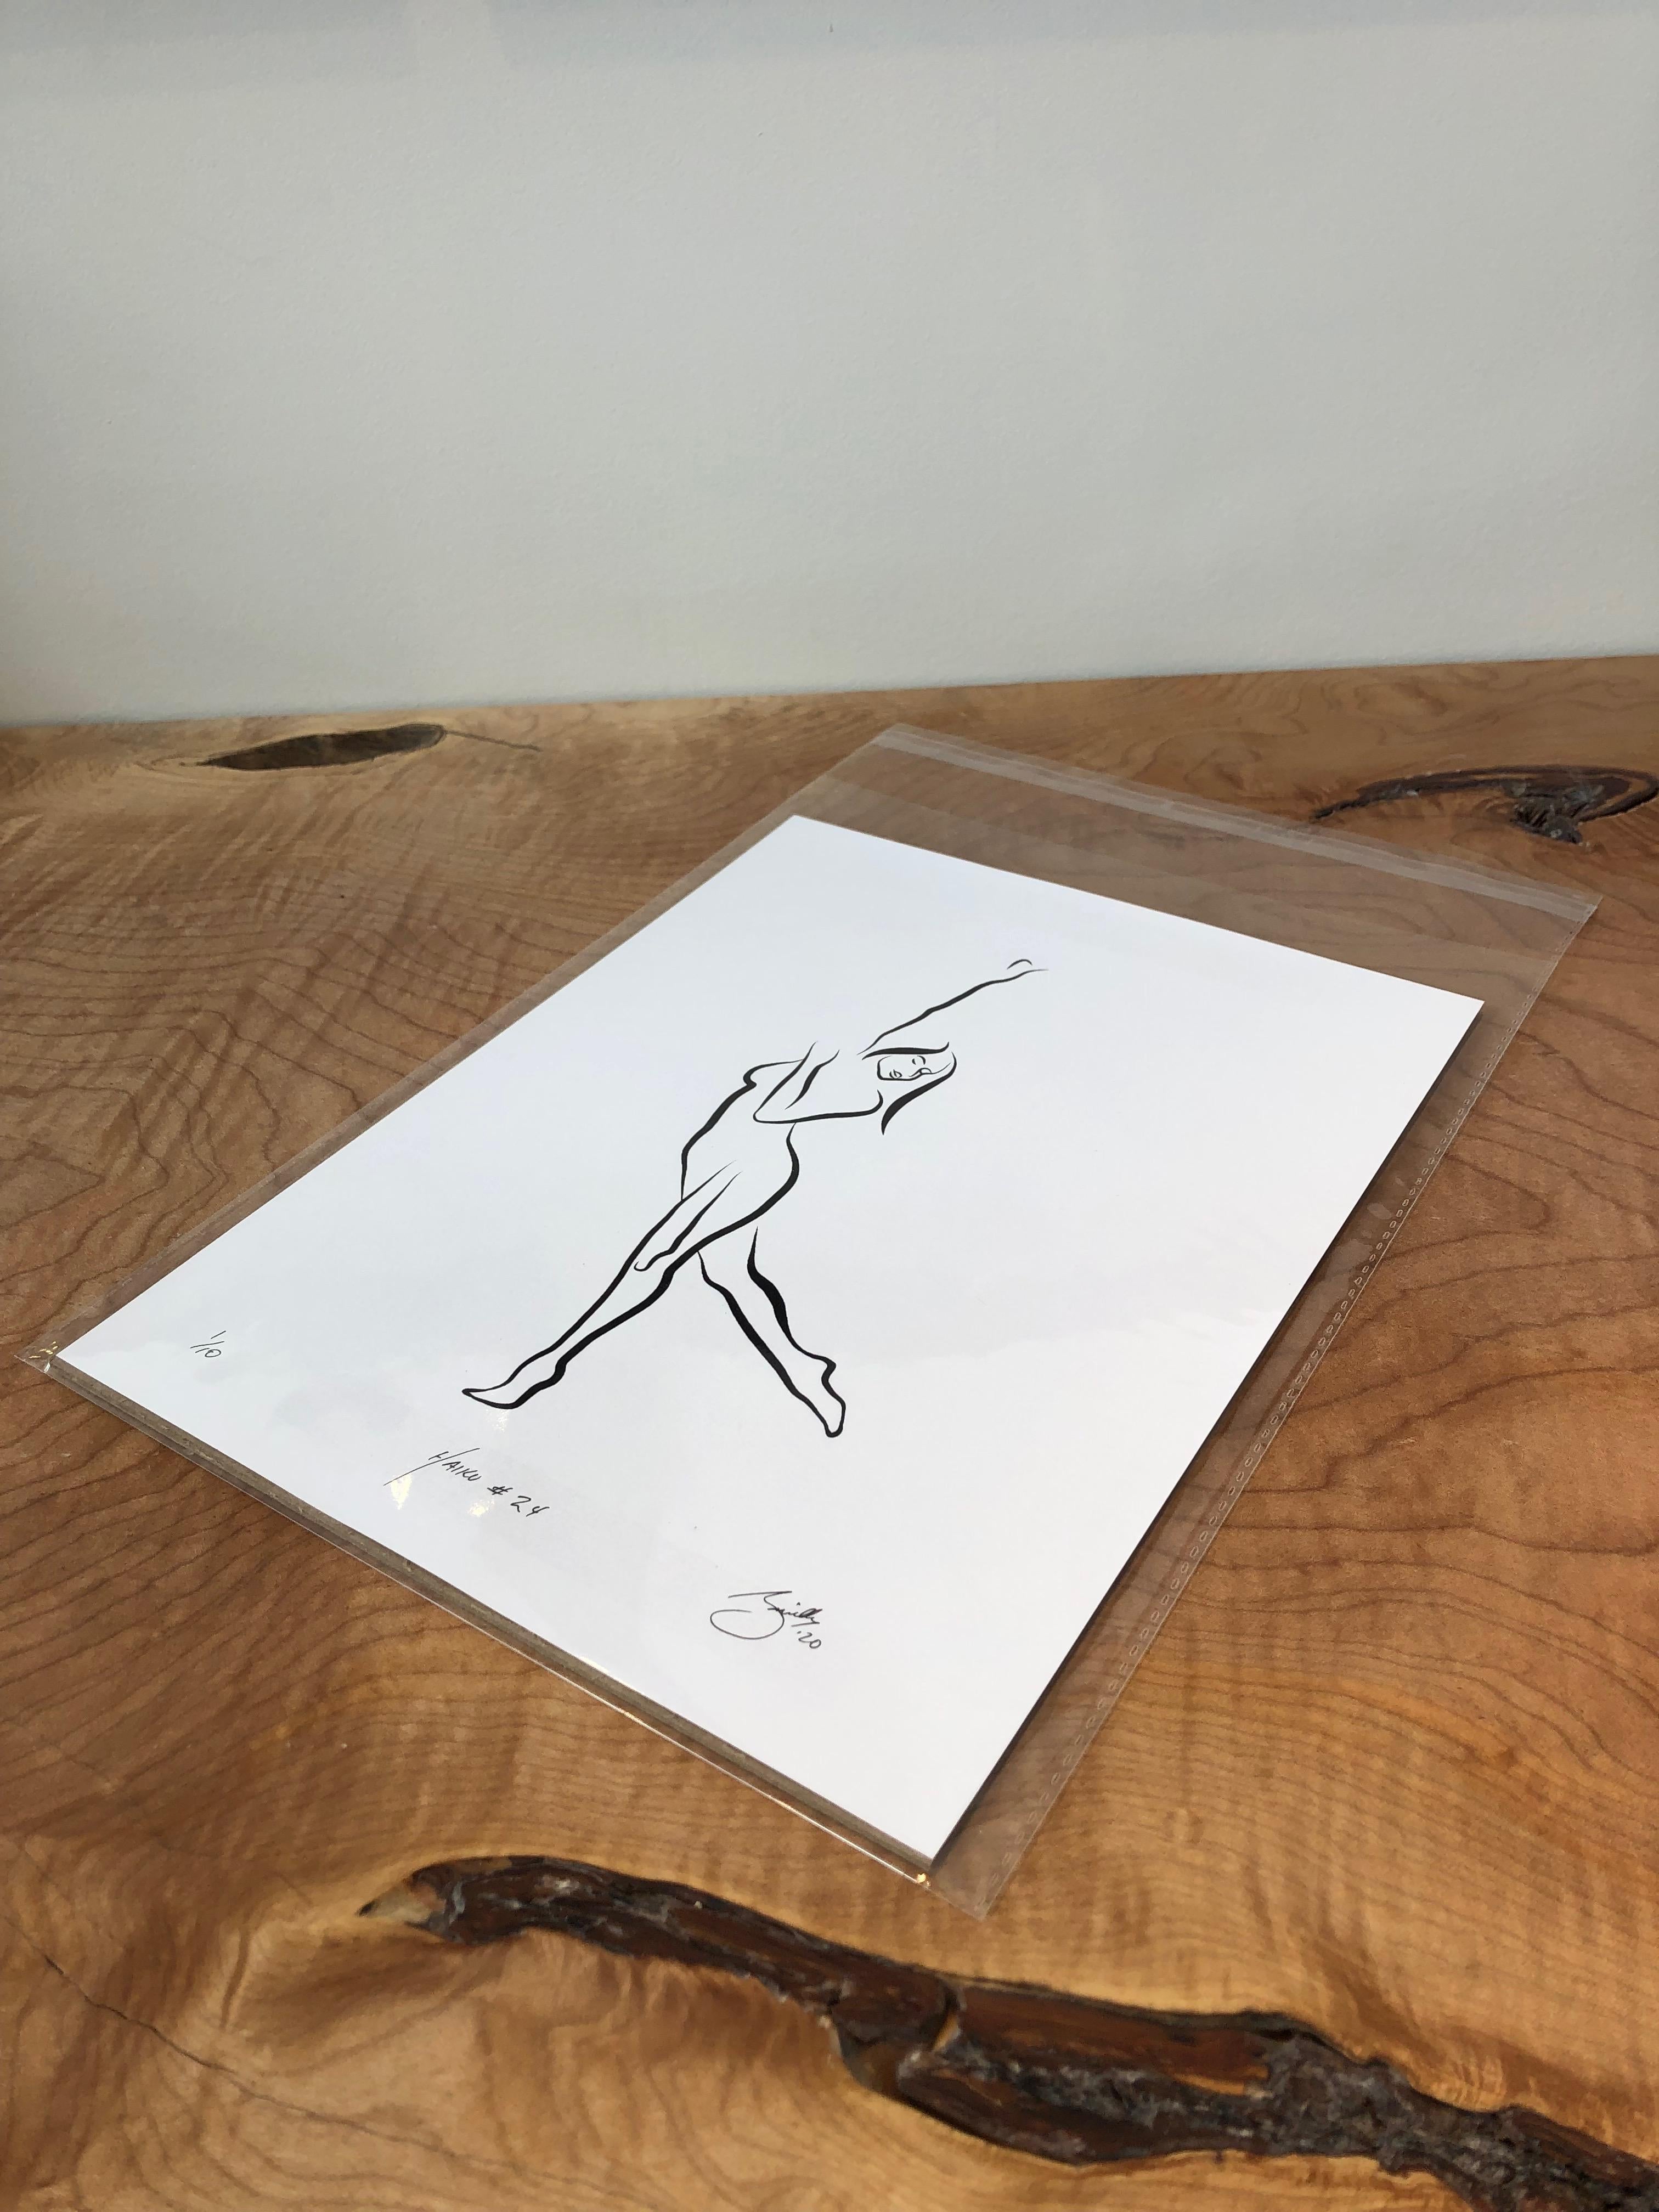 Haiku #24, 1/50 - Digital Vector Drawing Dancing Female Nude Woman Figure Arm Up - Print by Michael Binkley